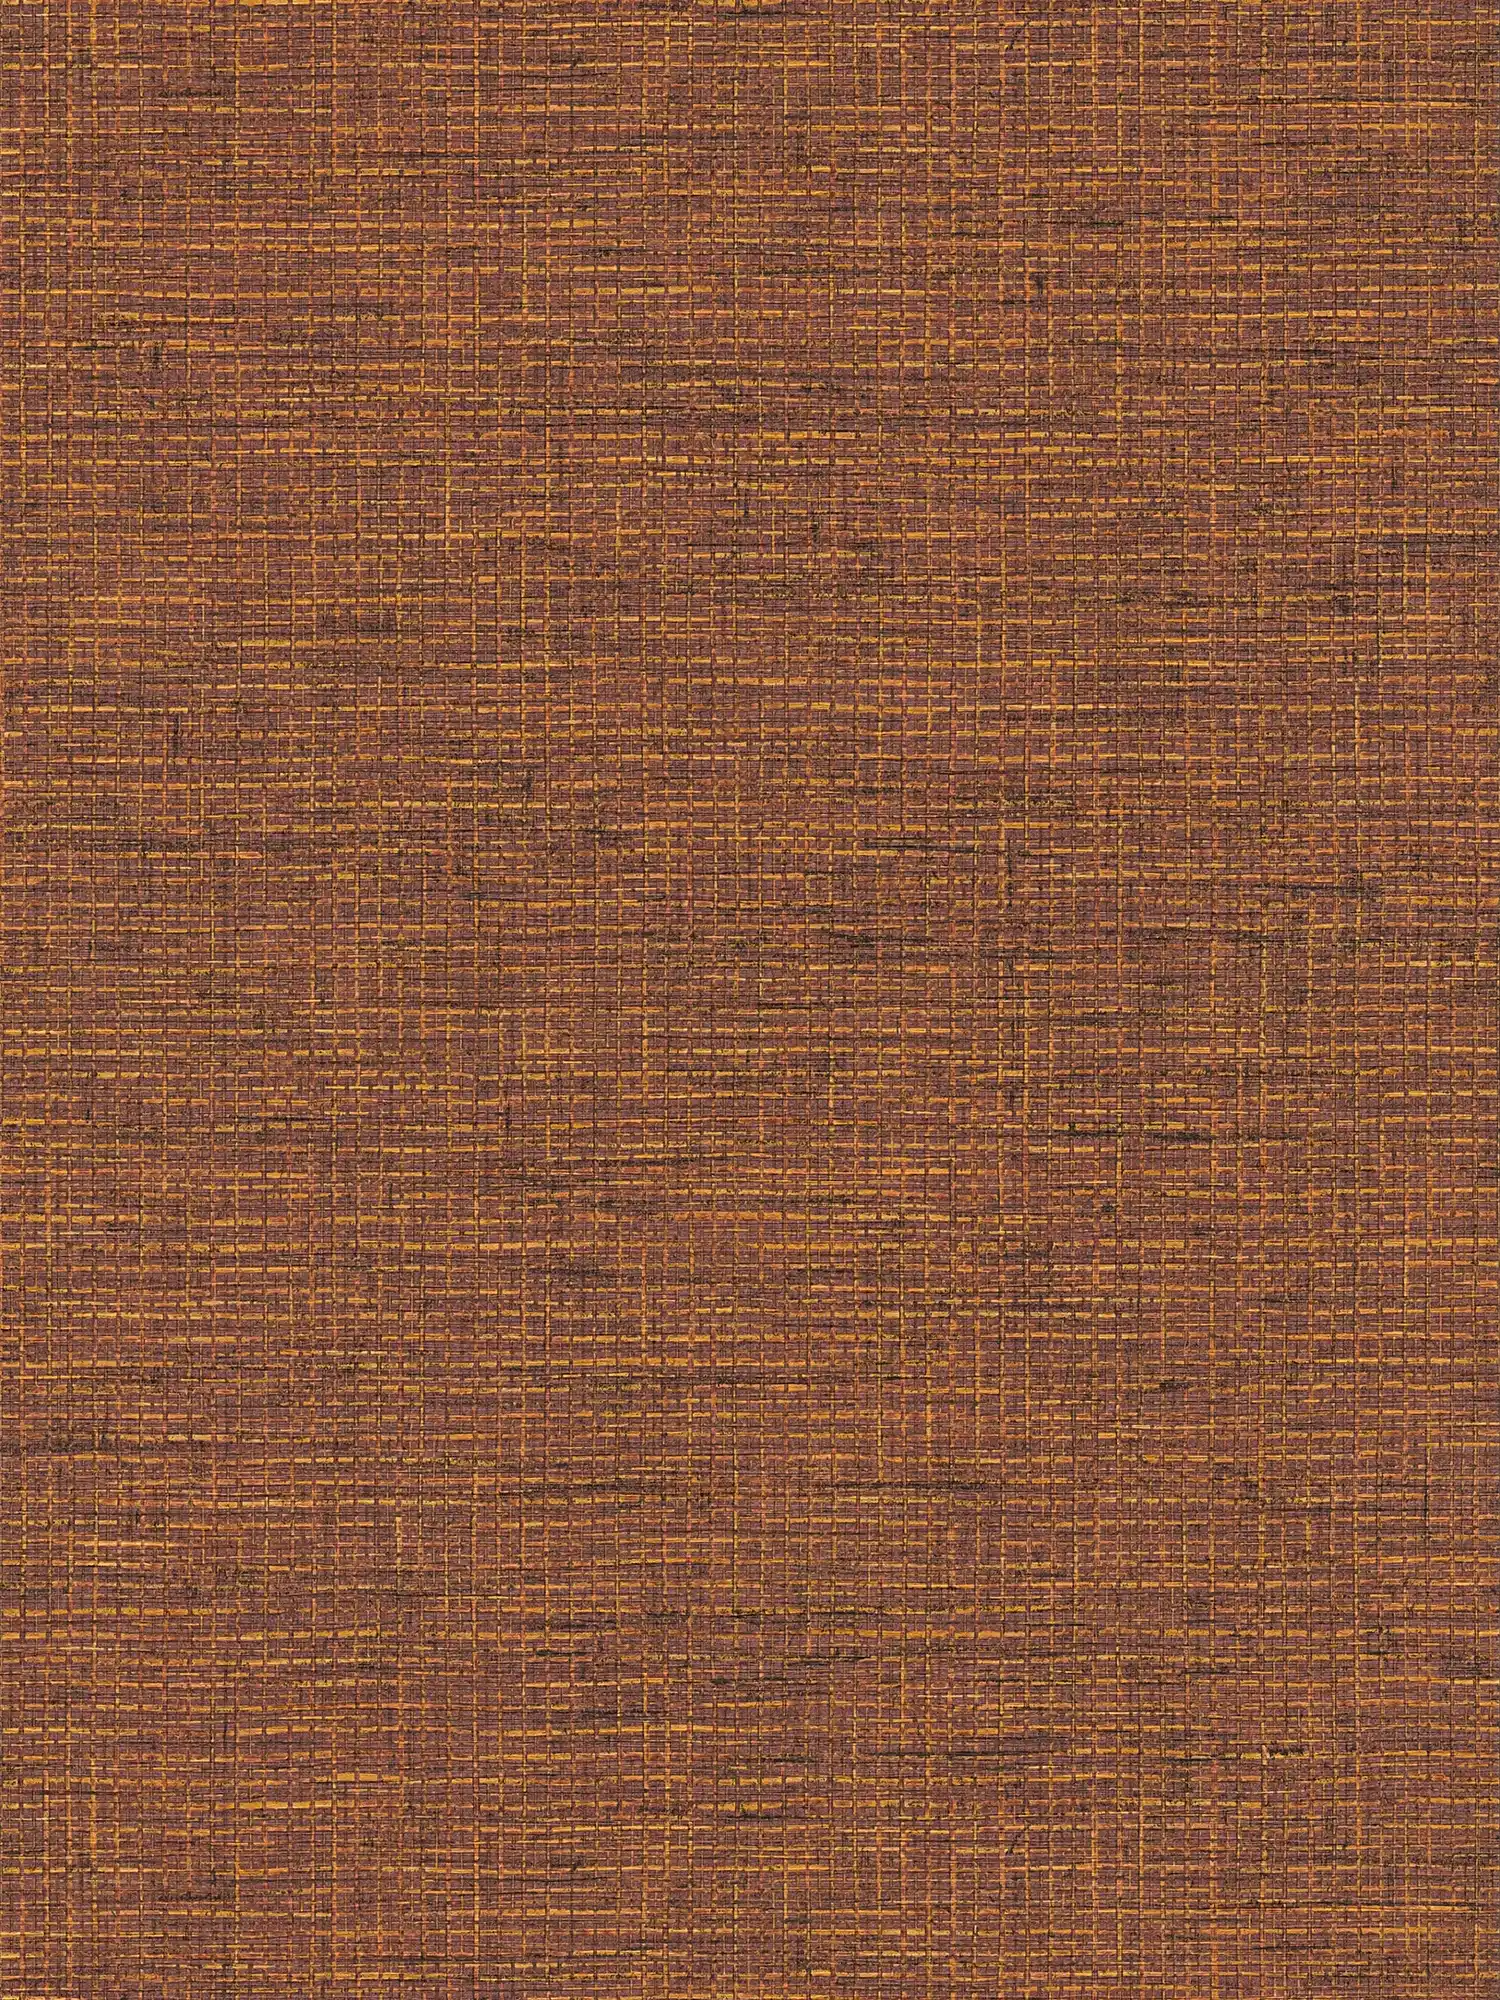 Papel pintado etno marrón anaranjado con aspecto de rafia
